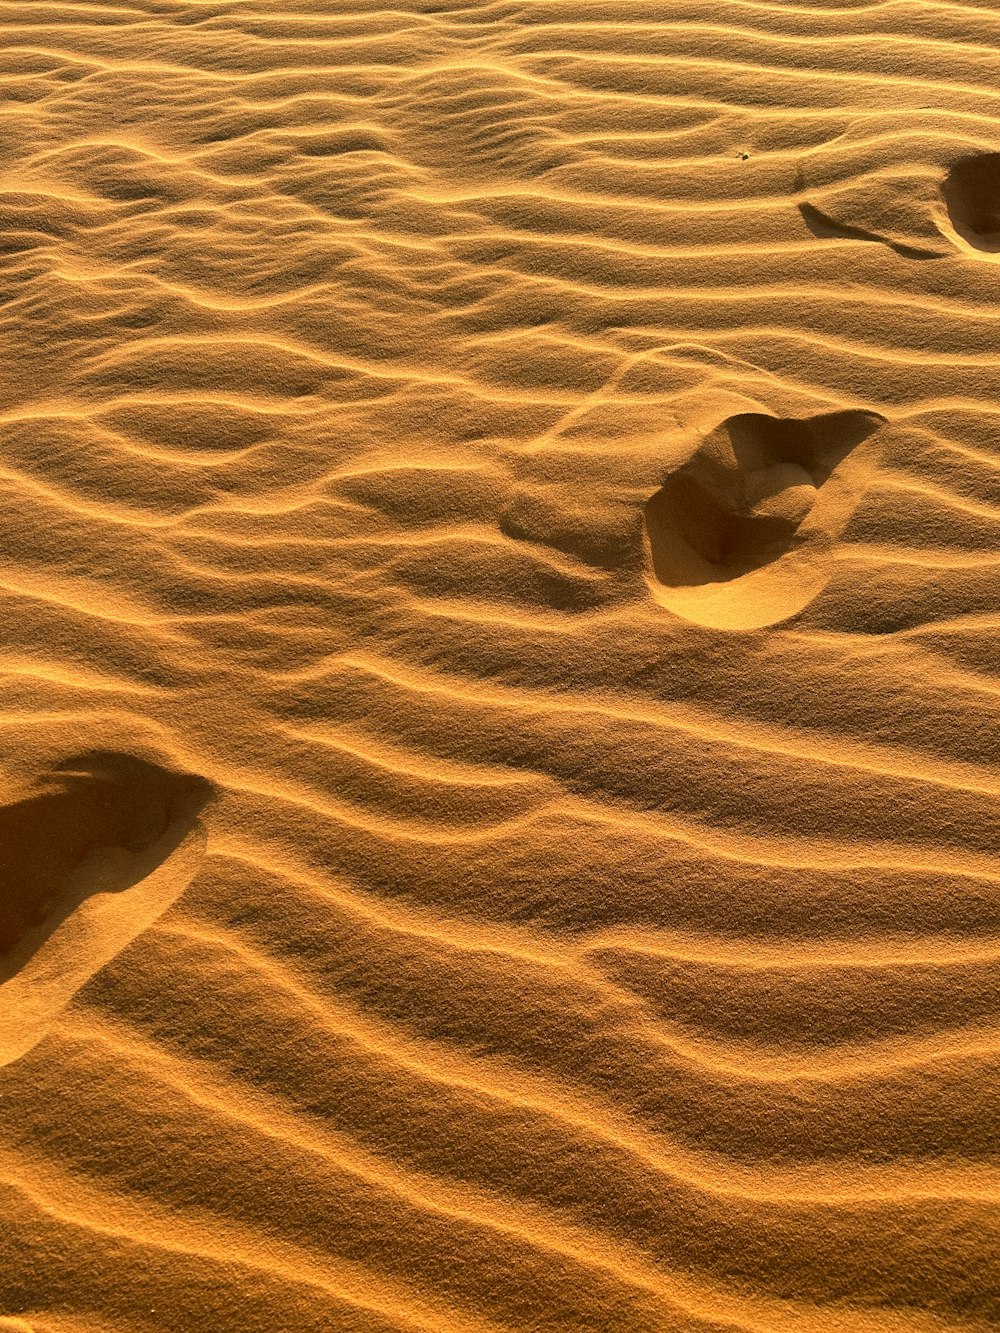 Dos huellas en la arena de un desierto